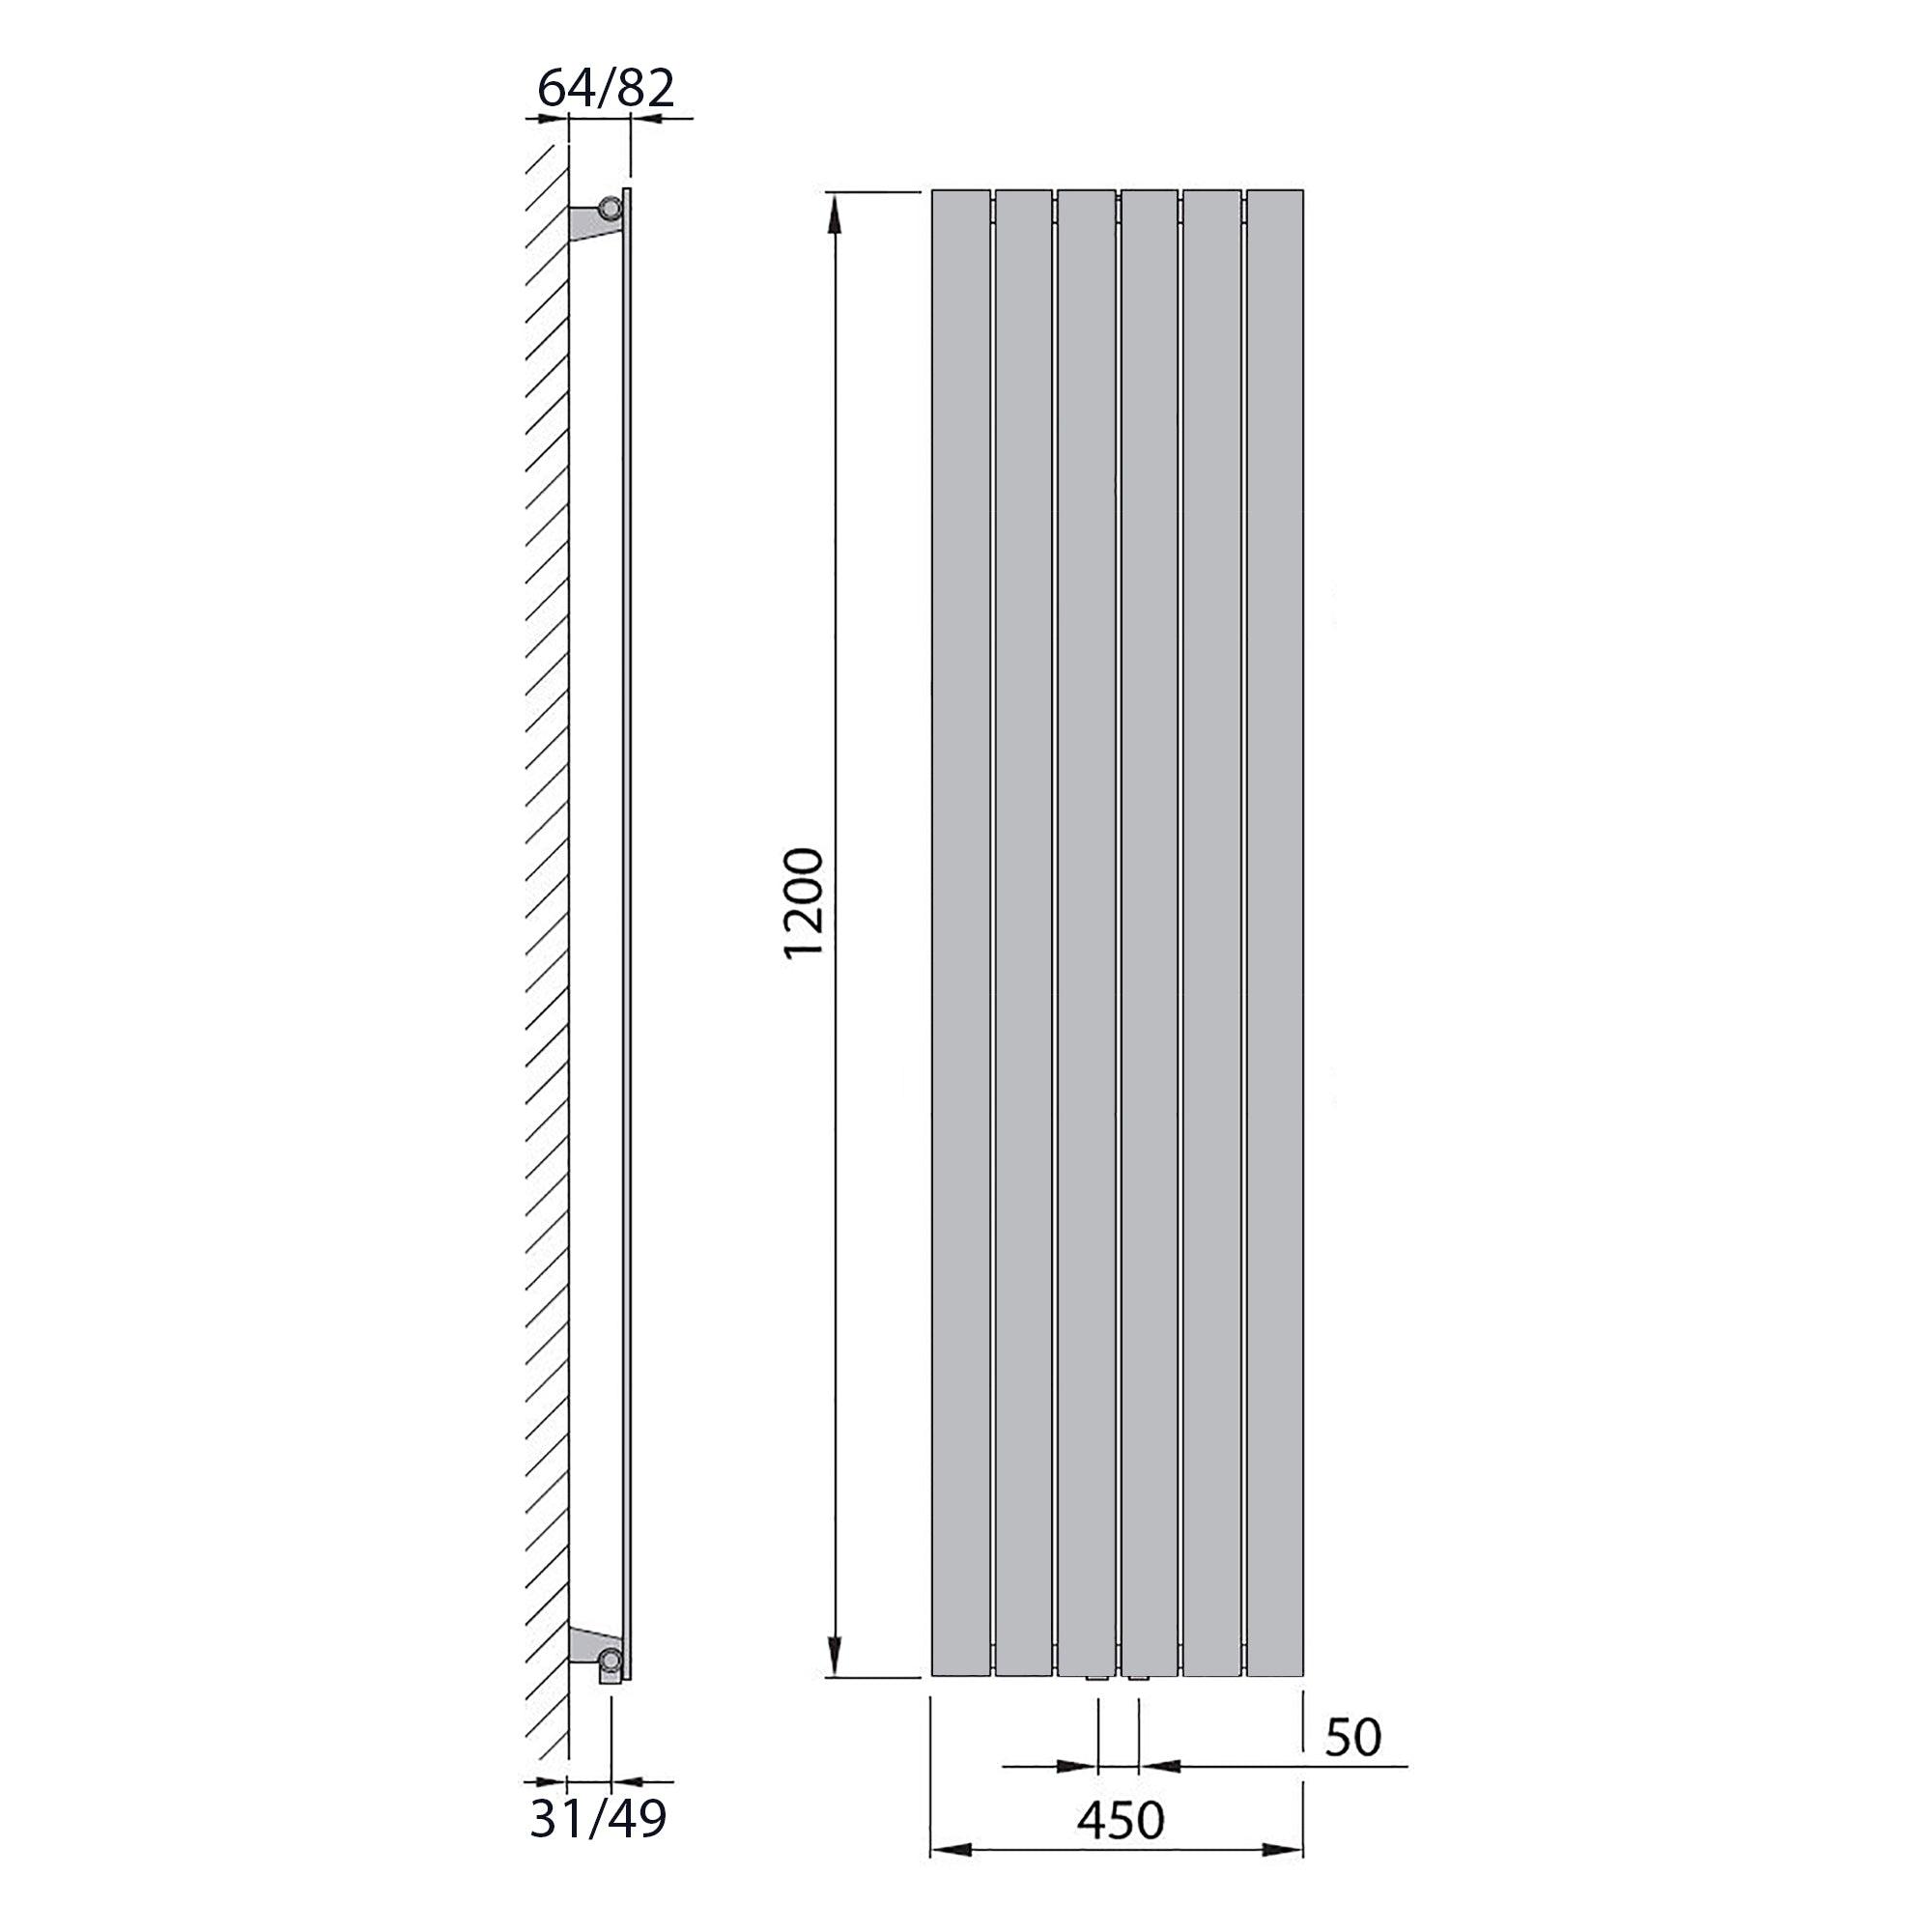 Design Paneelheizkörper vertikal 1200 x 450 weiß Heizkörper Badheizkörper flach Badezimmer Heizung technische Zeichnung - heizkoerper.shop